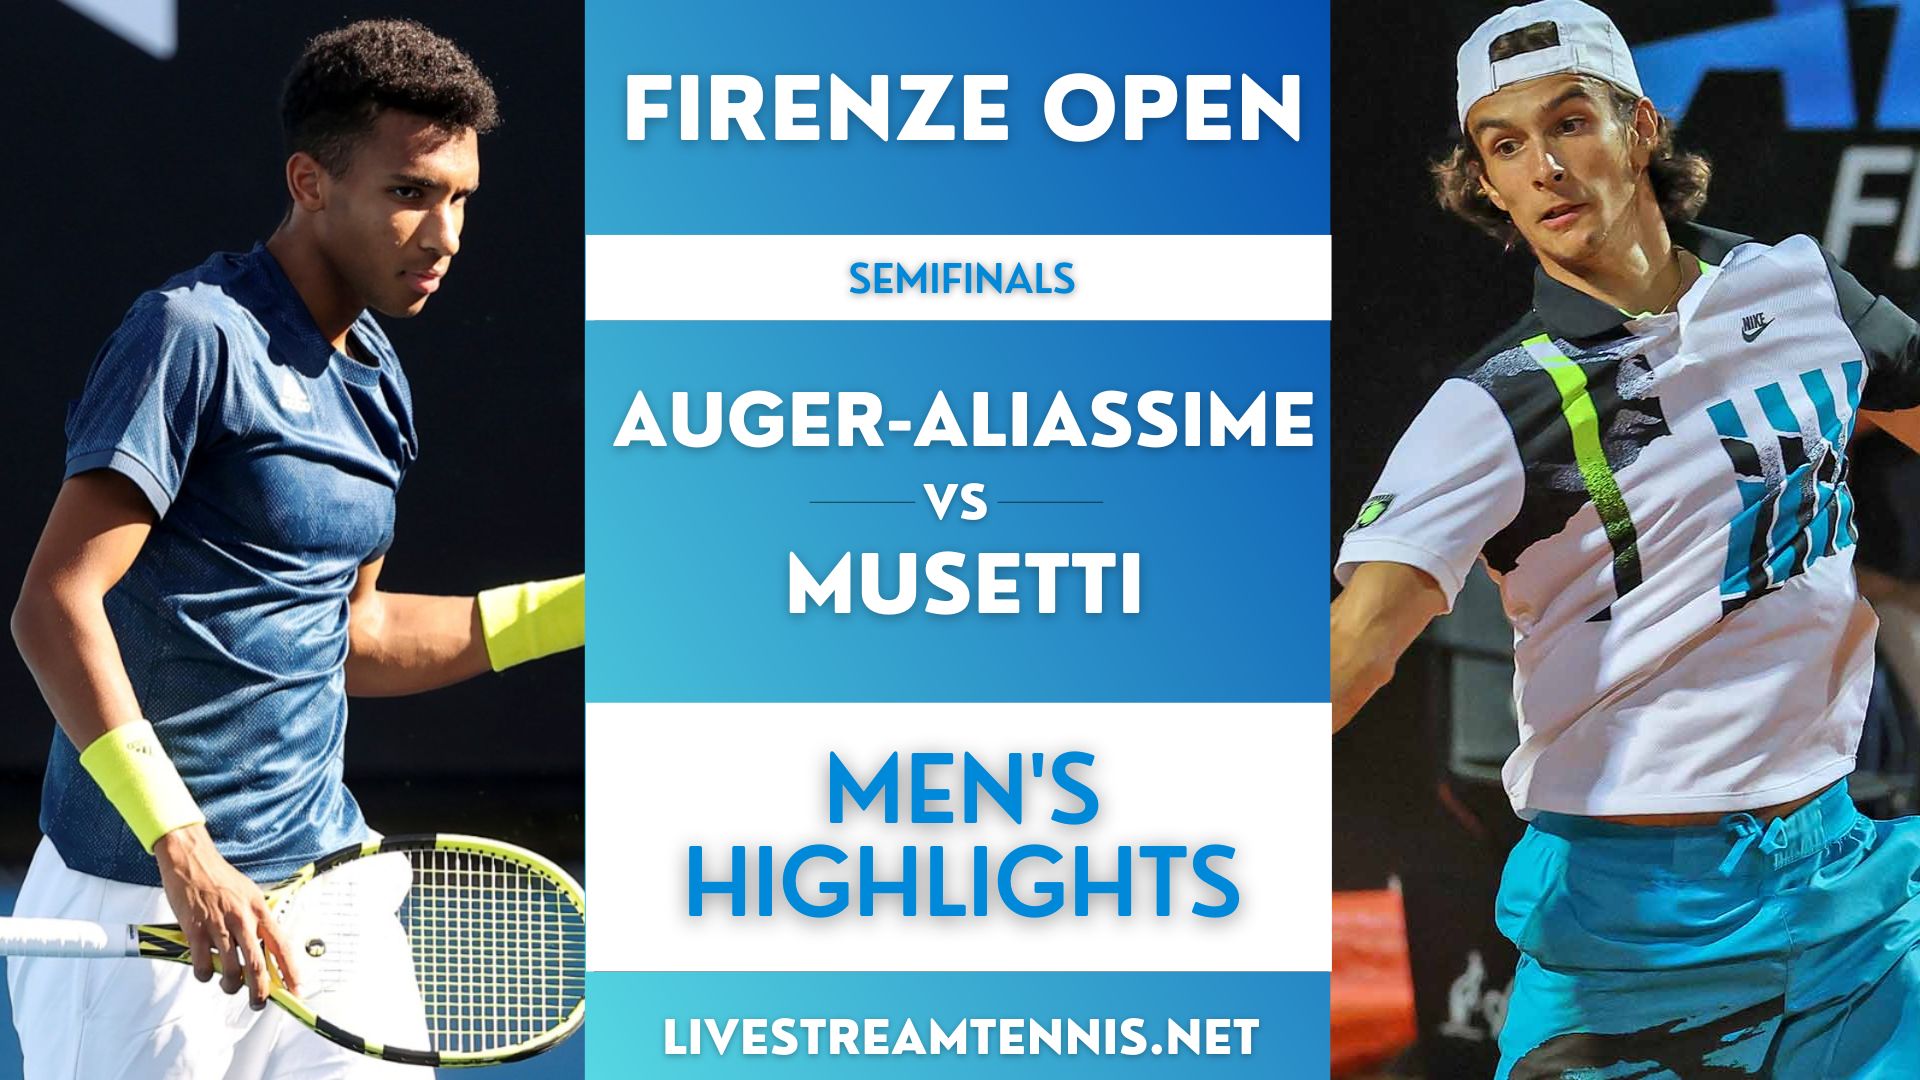 Firenze Open ATP Semifinal 1 Highlights 2022